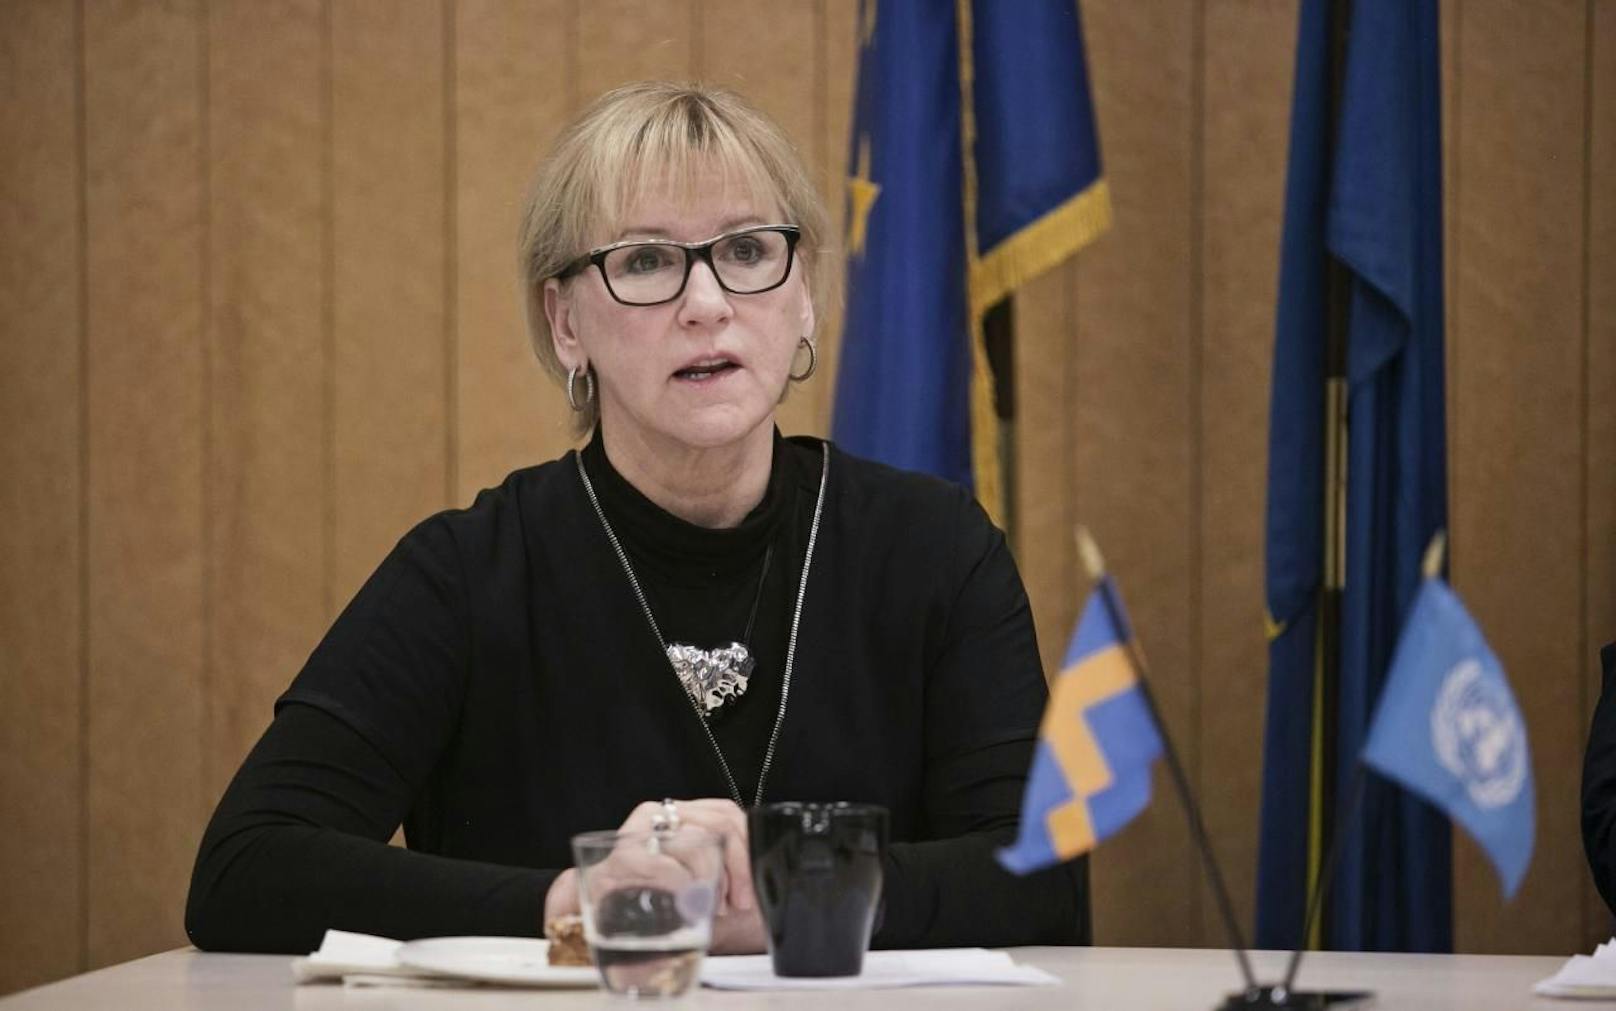 Opfer: Die schwedische Außenministerin Margot Wallström (63) hat jetzt enthüllt, dass sie bei einem EU-Essen sexuell belästigt wurde.